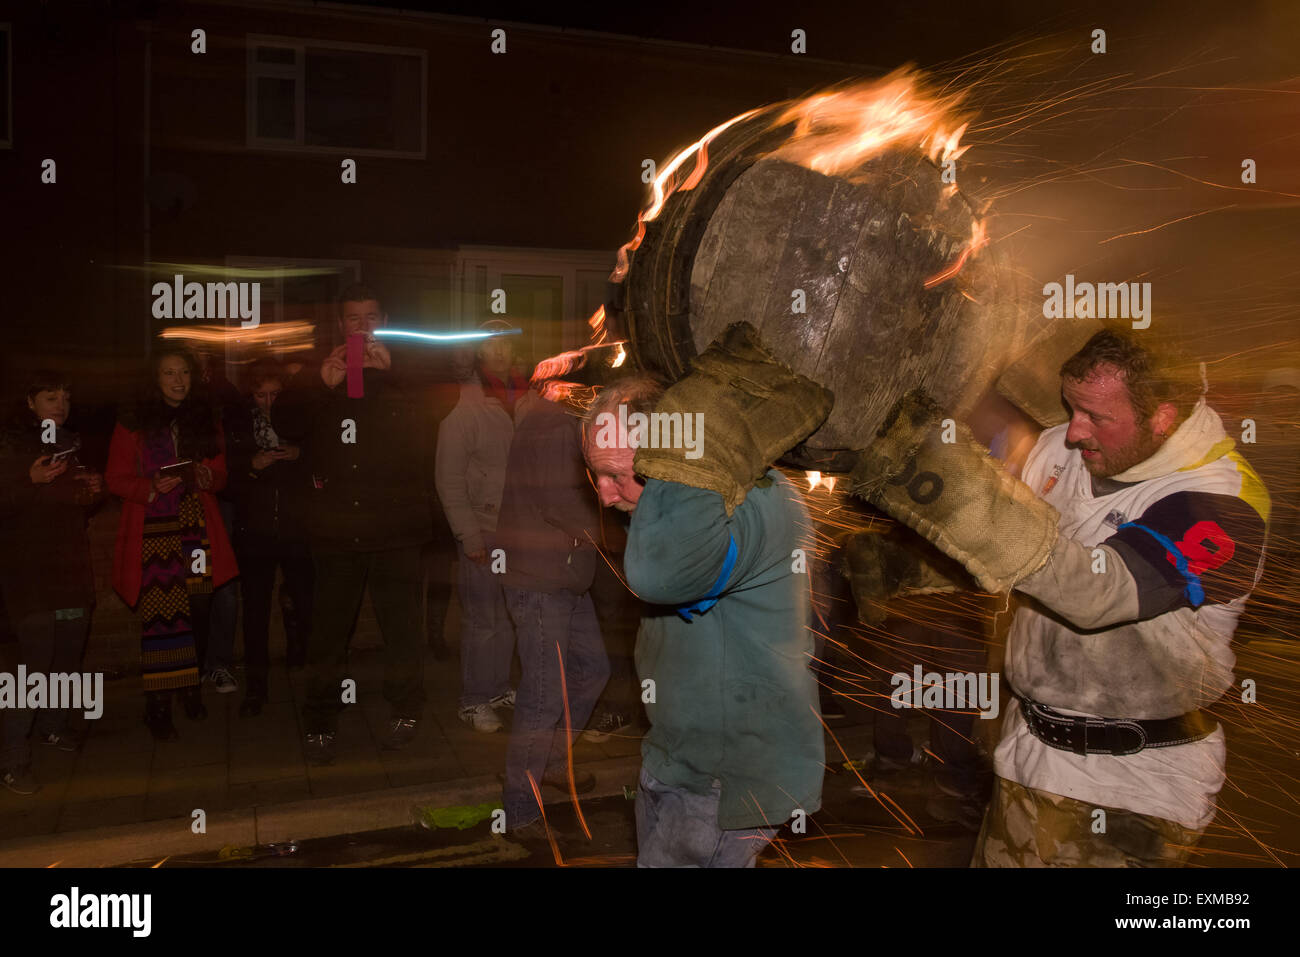 Homme portant un fourreau brûlant là de l'rue, pour marquer le Bonfire Night, 5 novembre, à la tar de barils festival, Honiton, Devon, Angleterre Banque D'Images